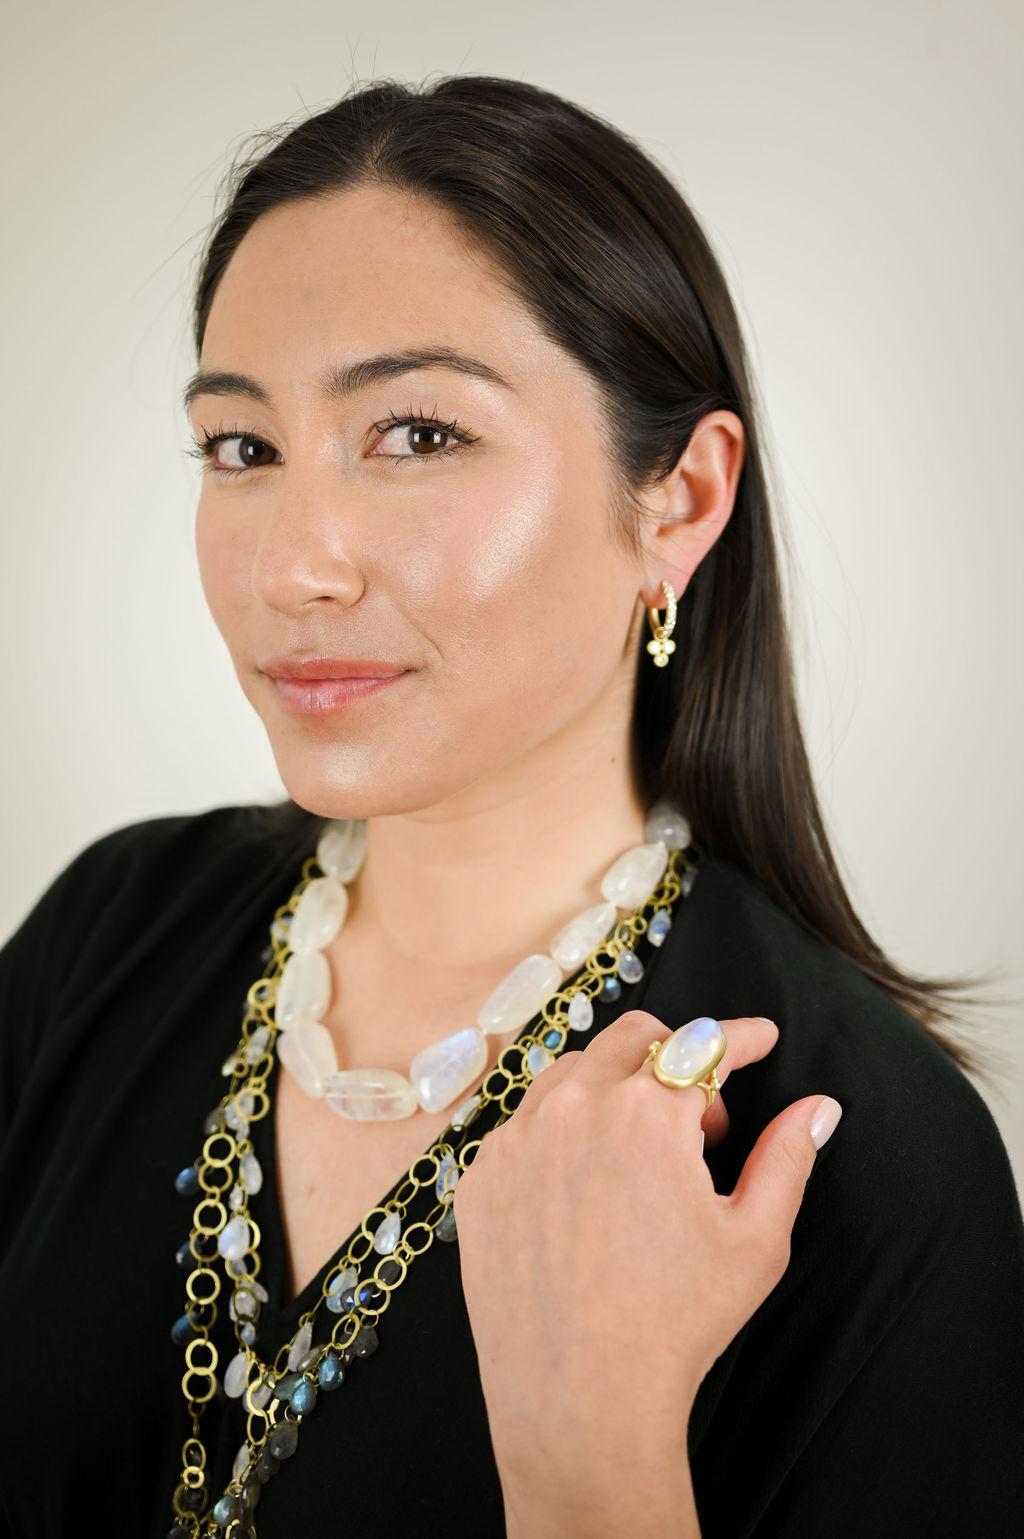 Les boucles d'oreilles modernes et intemporelles en or 18 carats micro-pavé à charnière moyenne de Faye Kim complètent tous les styles et toutes les garde-robes, ajoutant de l'éclat à toutes les occasions ! 

Les autres photos montrent des anneaux